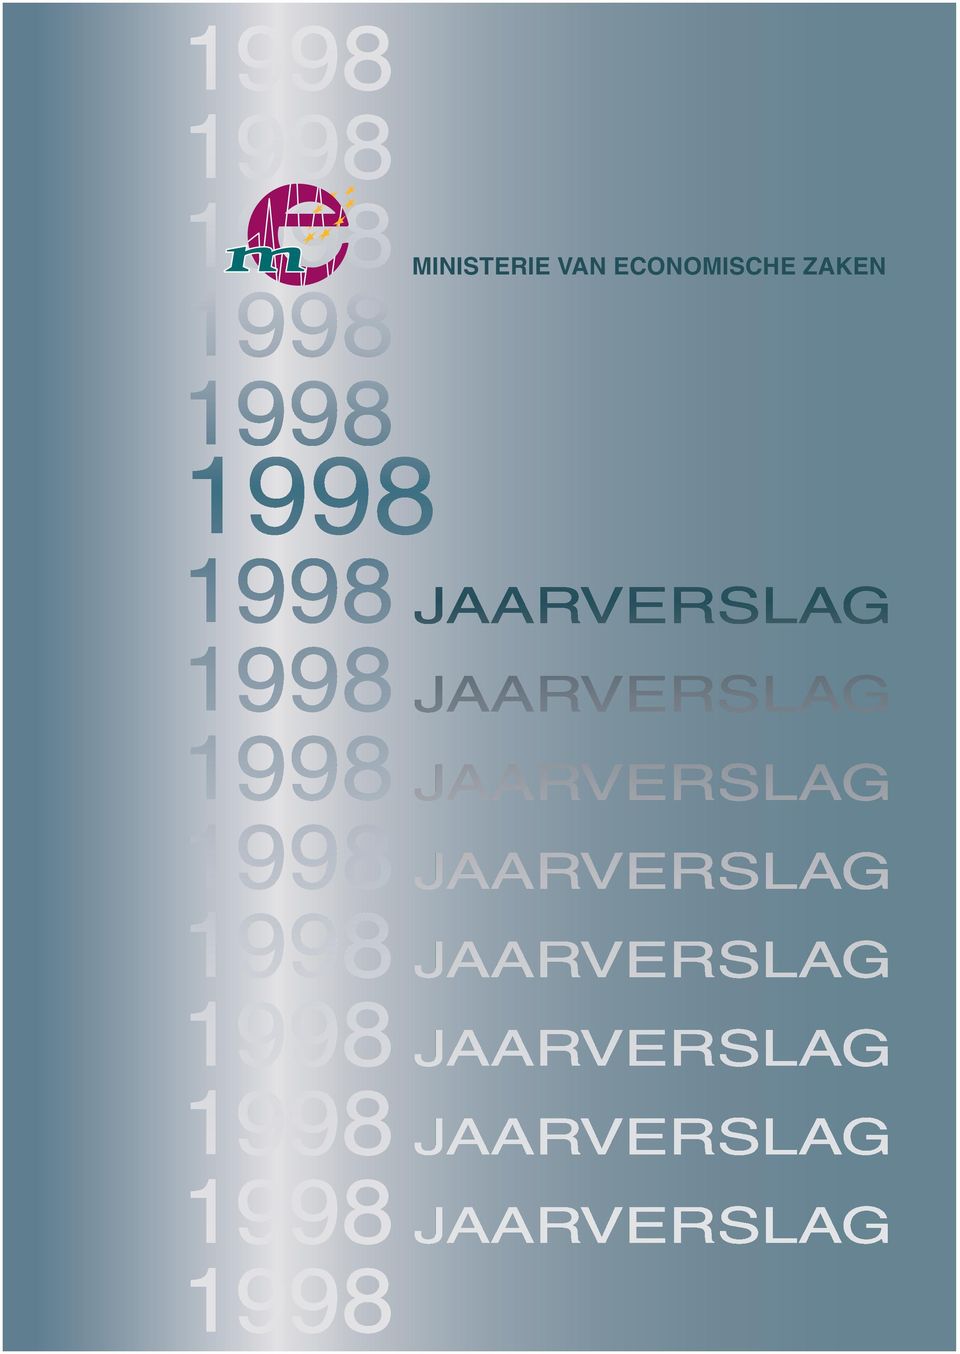 1998 1998 1998 JAARVERSLAG JAARVERSLAG JAARVERSLAG